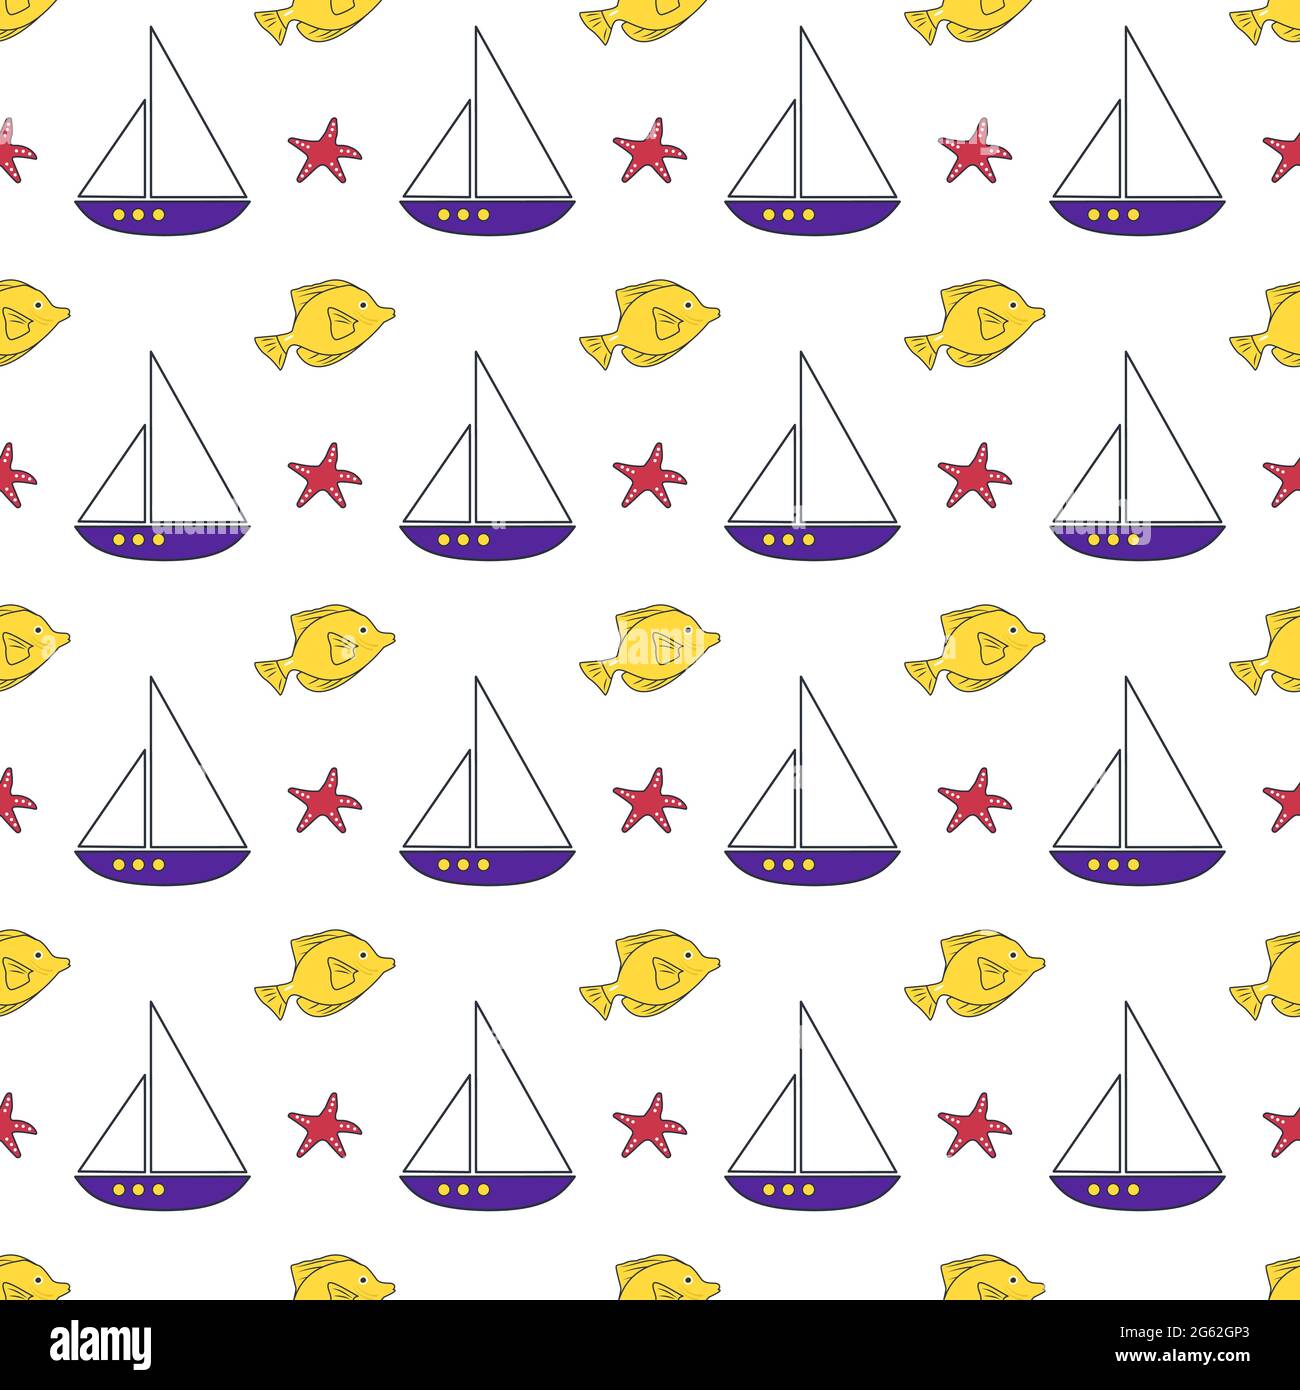 Sommermeermuster mit Schiffen, Fischen und Seesternen auf weißem Hintergrund Stock Vektor